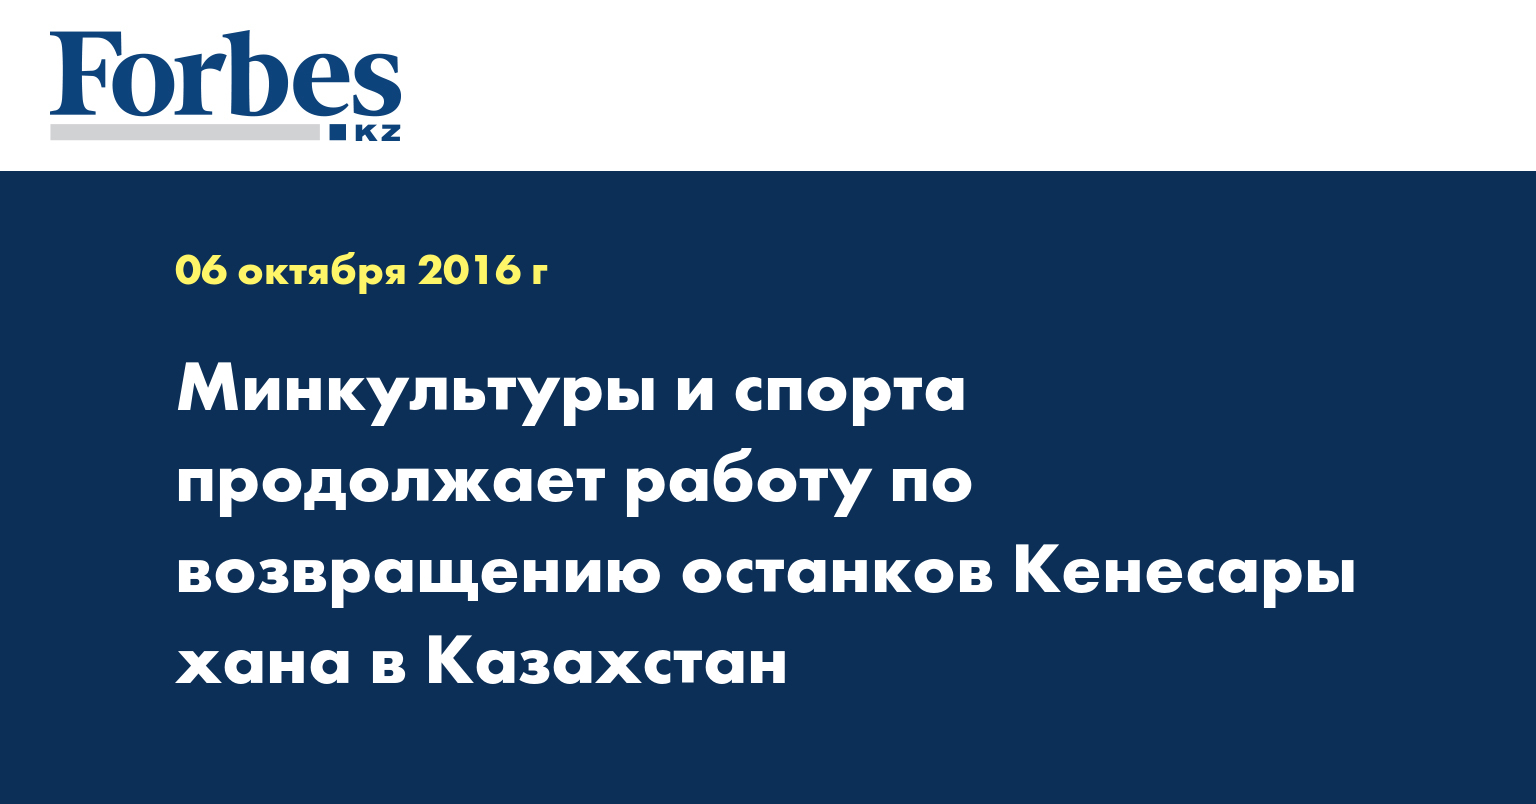 Минкультуры и спорта продолжает работу по возвращению останков Кенесары хана в Казахстан